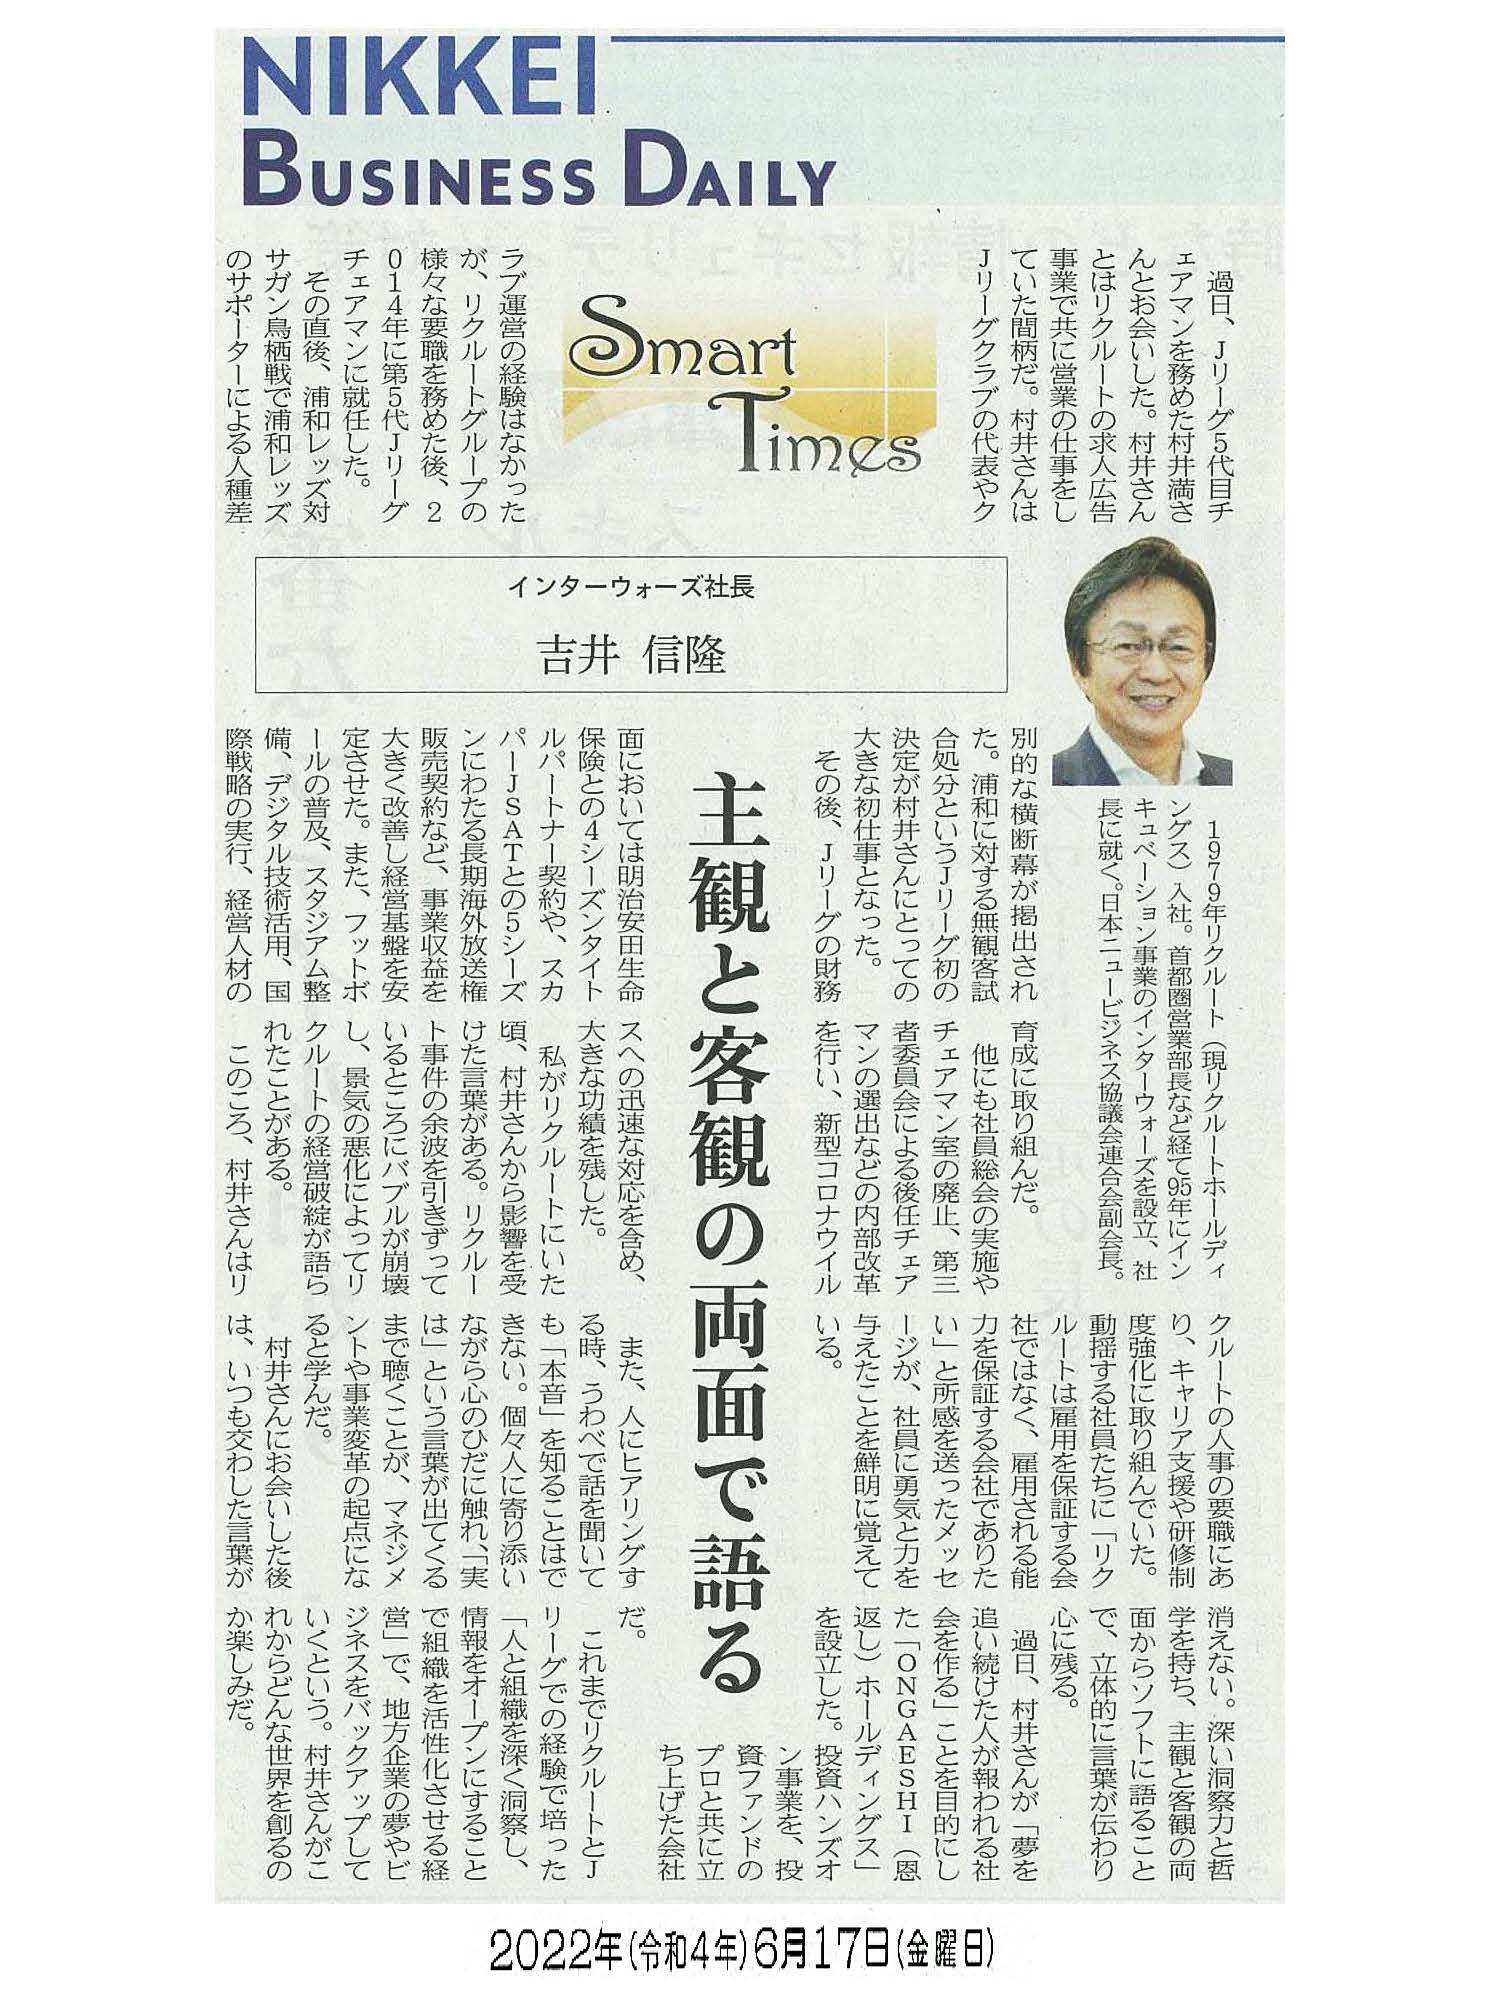 日経産業新聞 Smart Times「主観と客観の両面で語る」